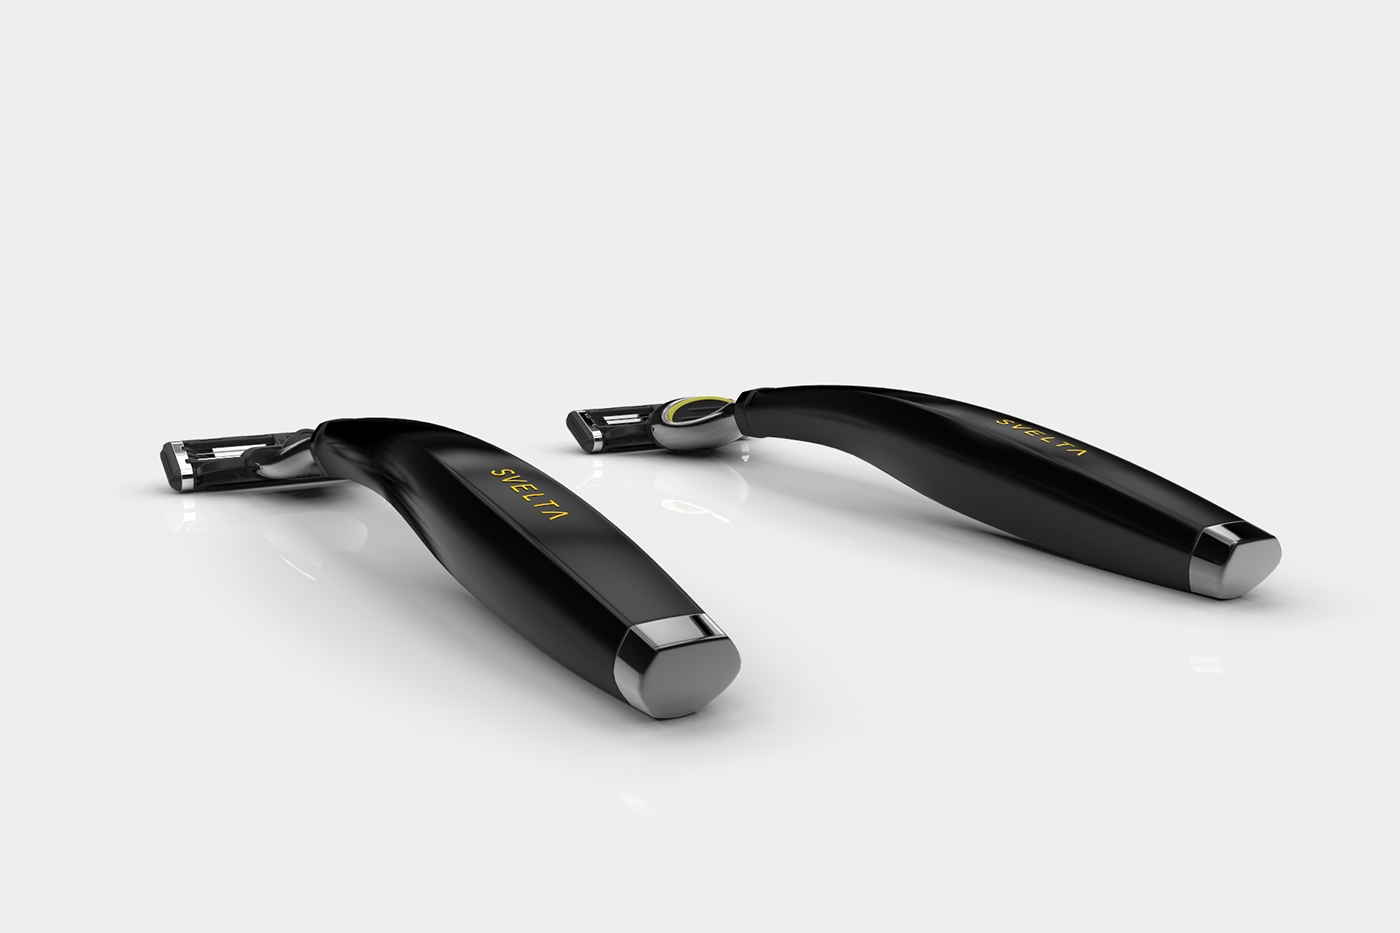 handle Razor razors 3D rendering GILLETTE Mach3 fusion pro glide handle design gillette design product 3D Rendering